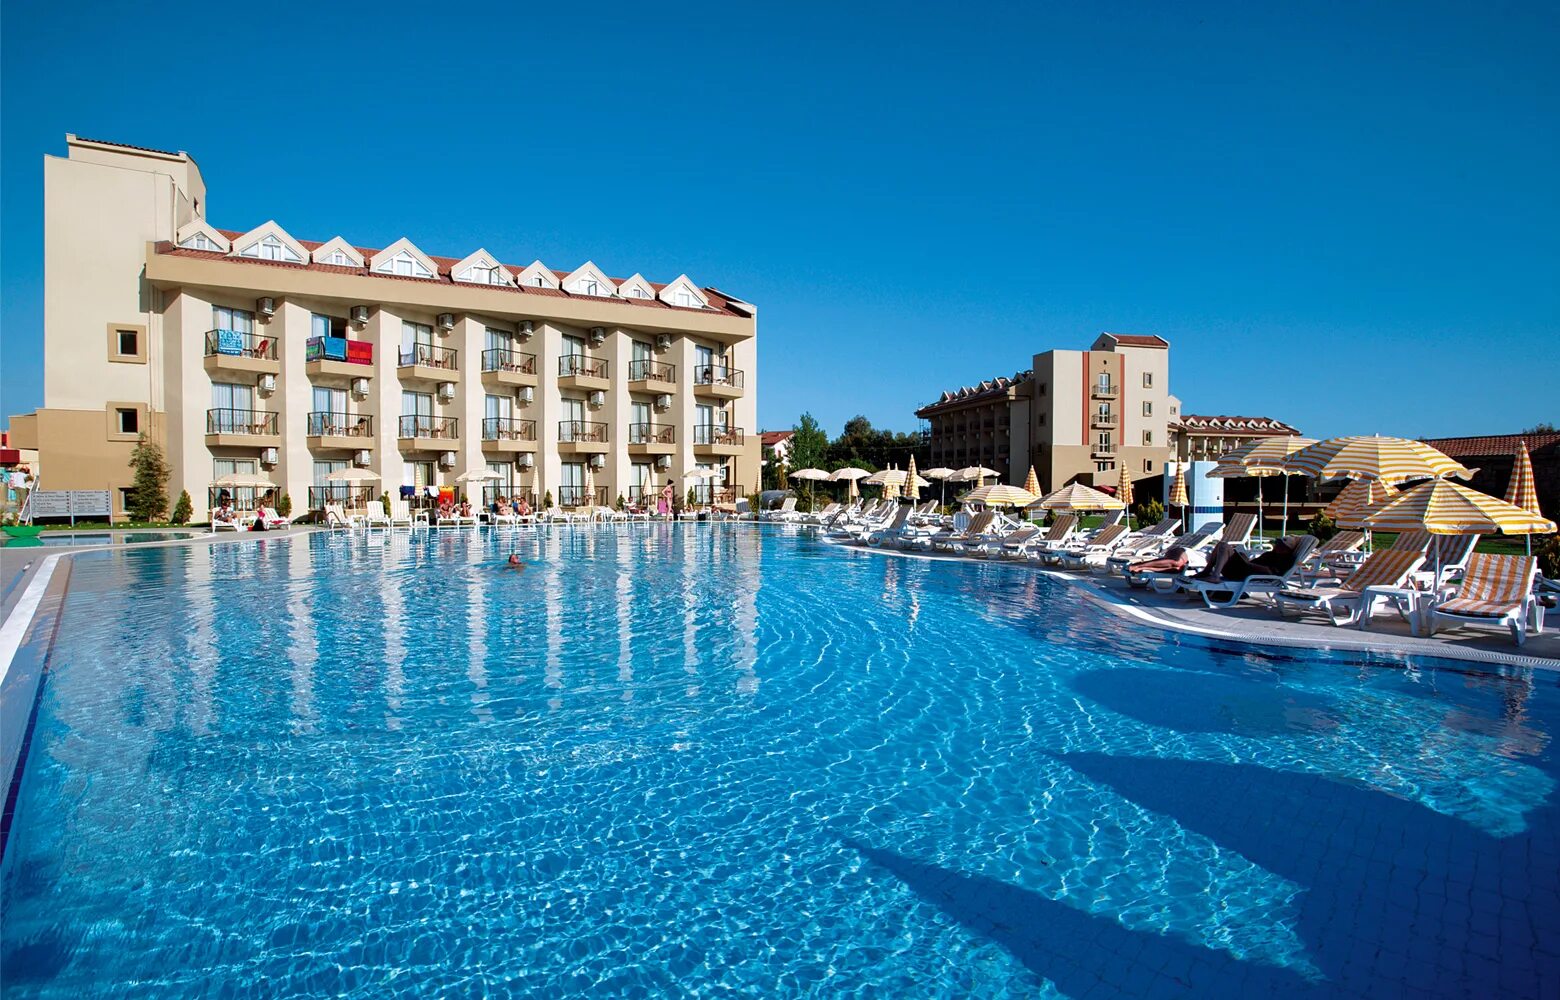 Сиде резорт 5 турция отзывы. Отель в Турции Victory Resort Hotel 5. Victory Resort Hotel Сиде Чолаклы.